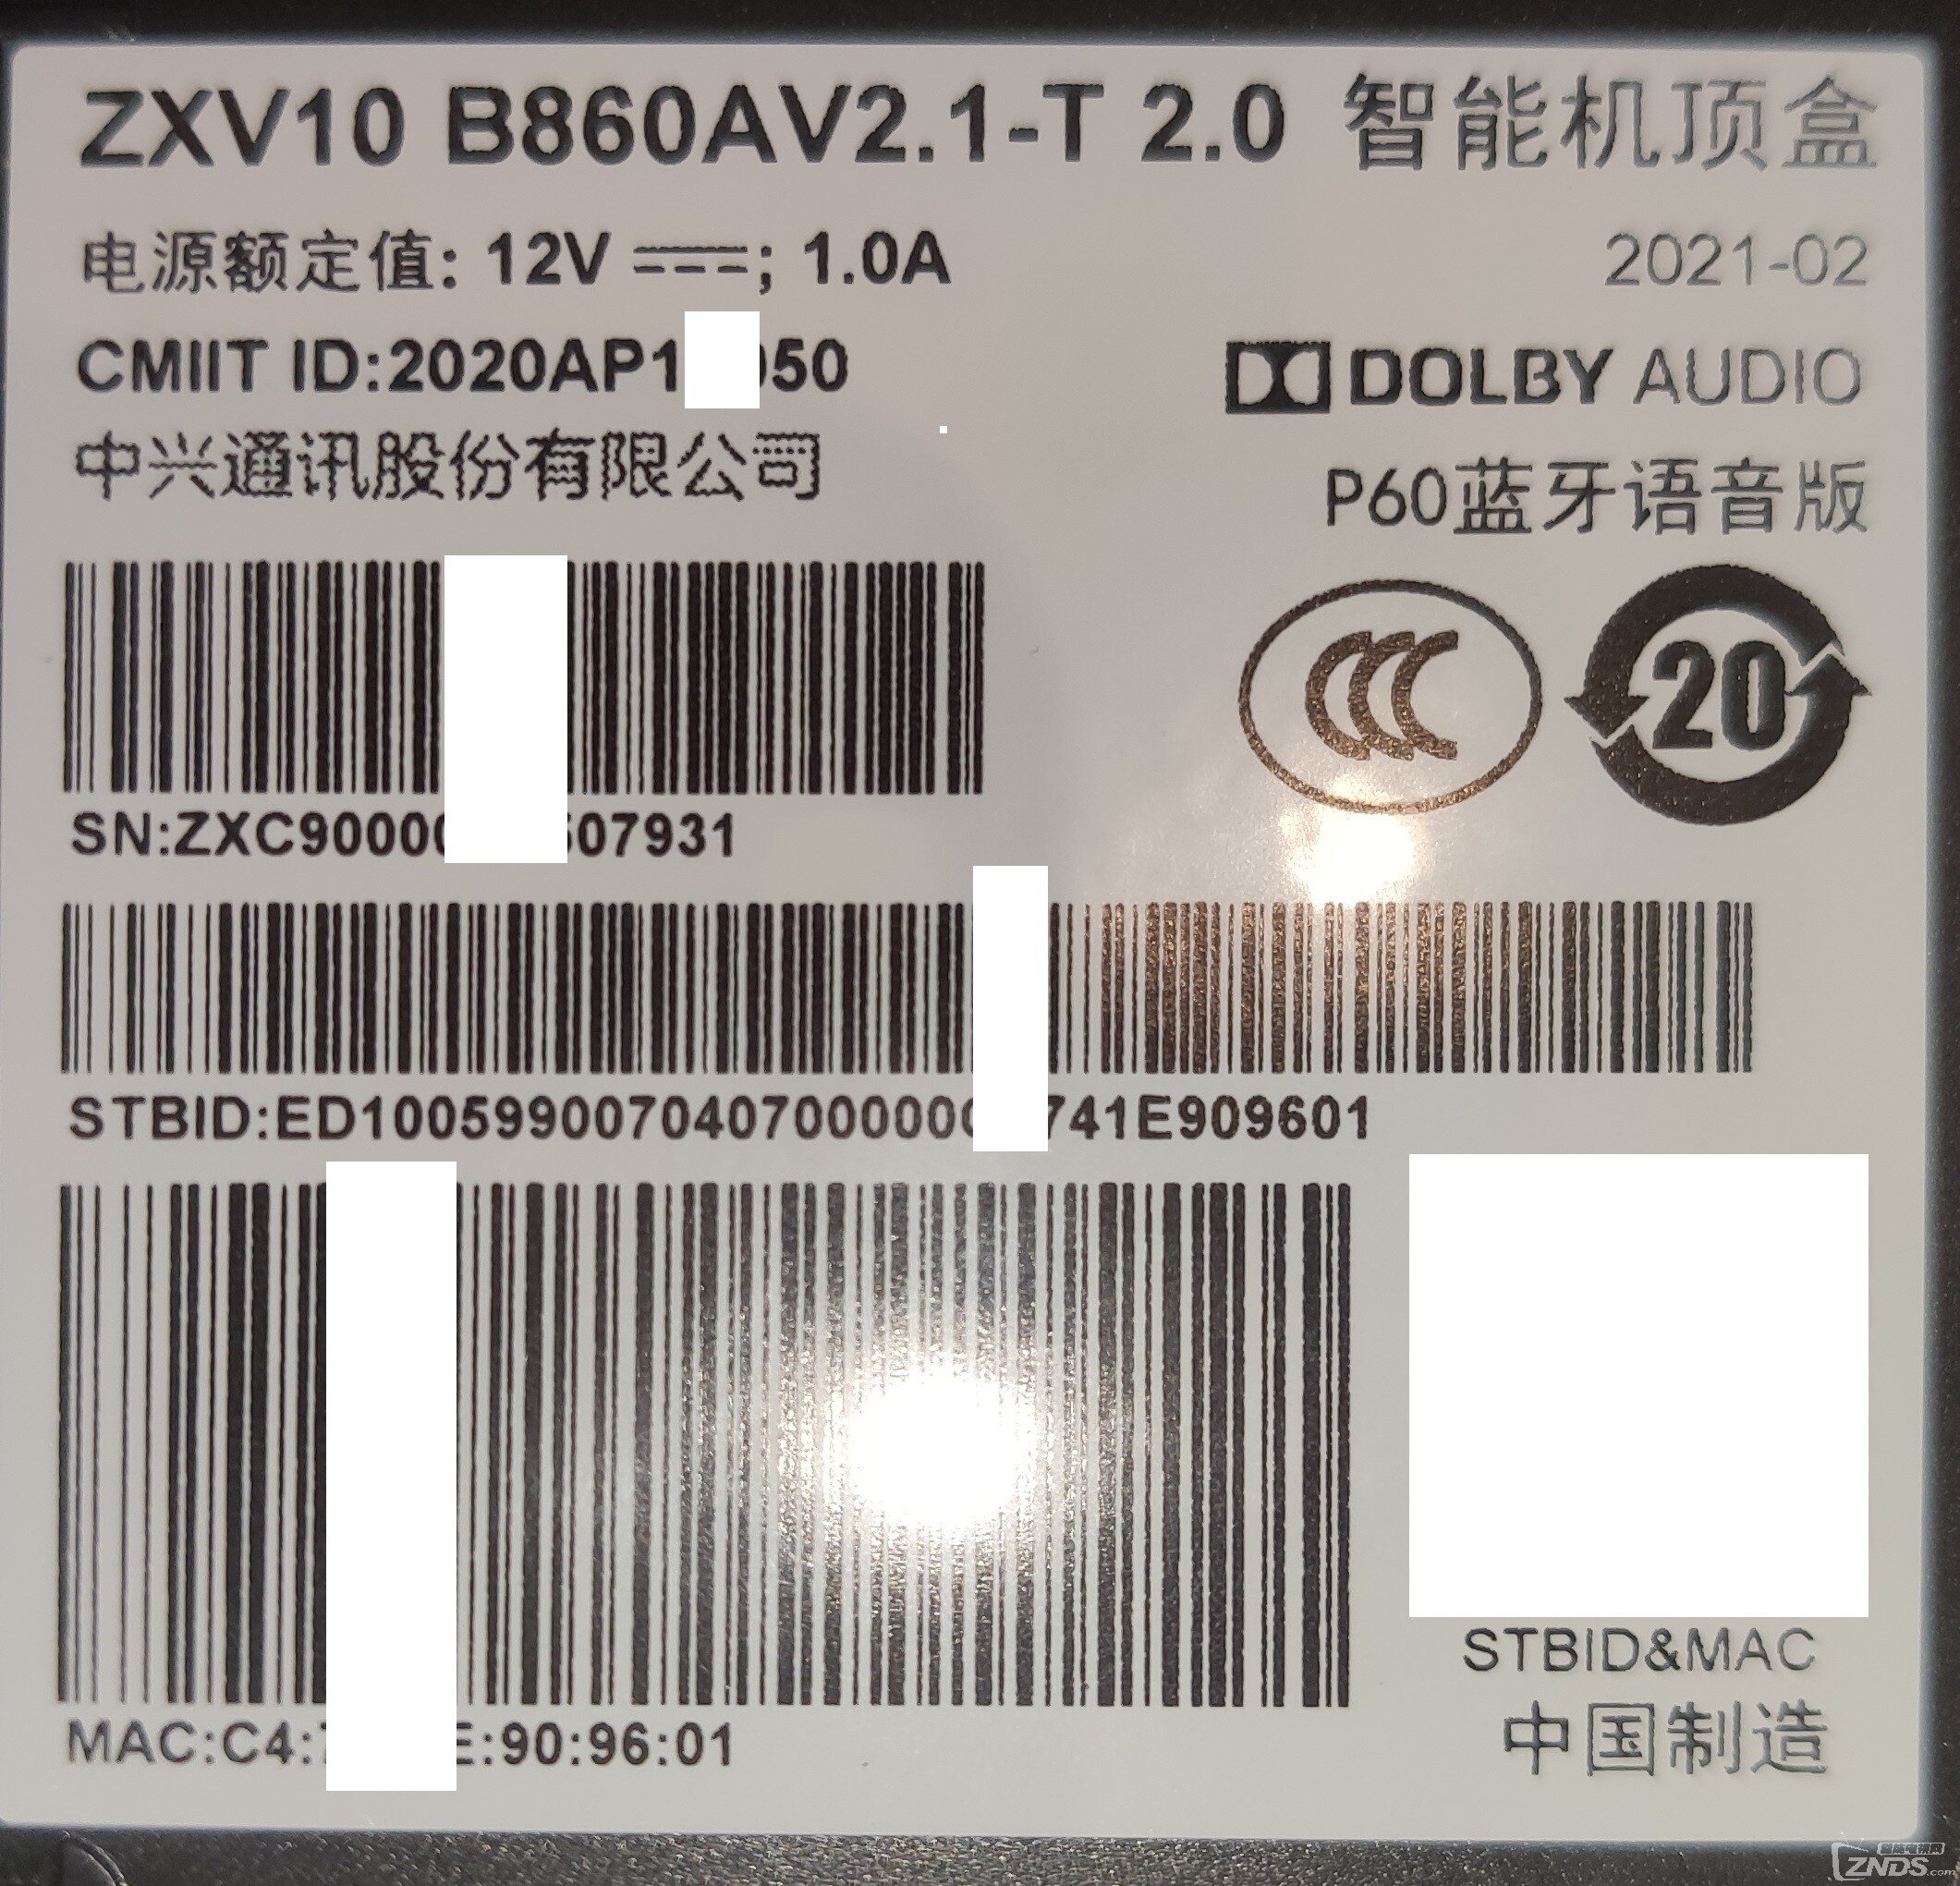 江苏电信B860AV2.1-T2.0 小白刷机成功_中兴机顶盒_ZNDS